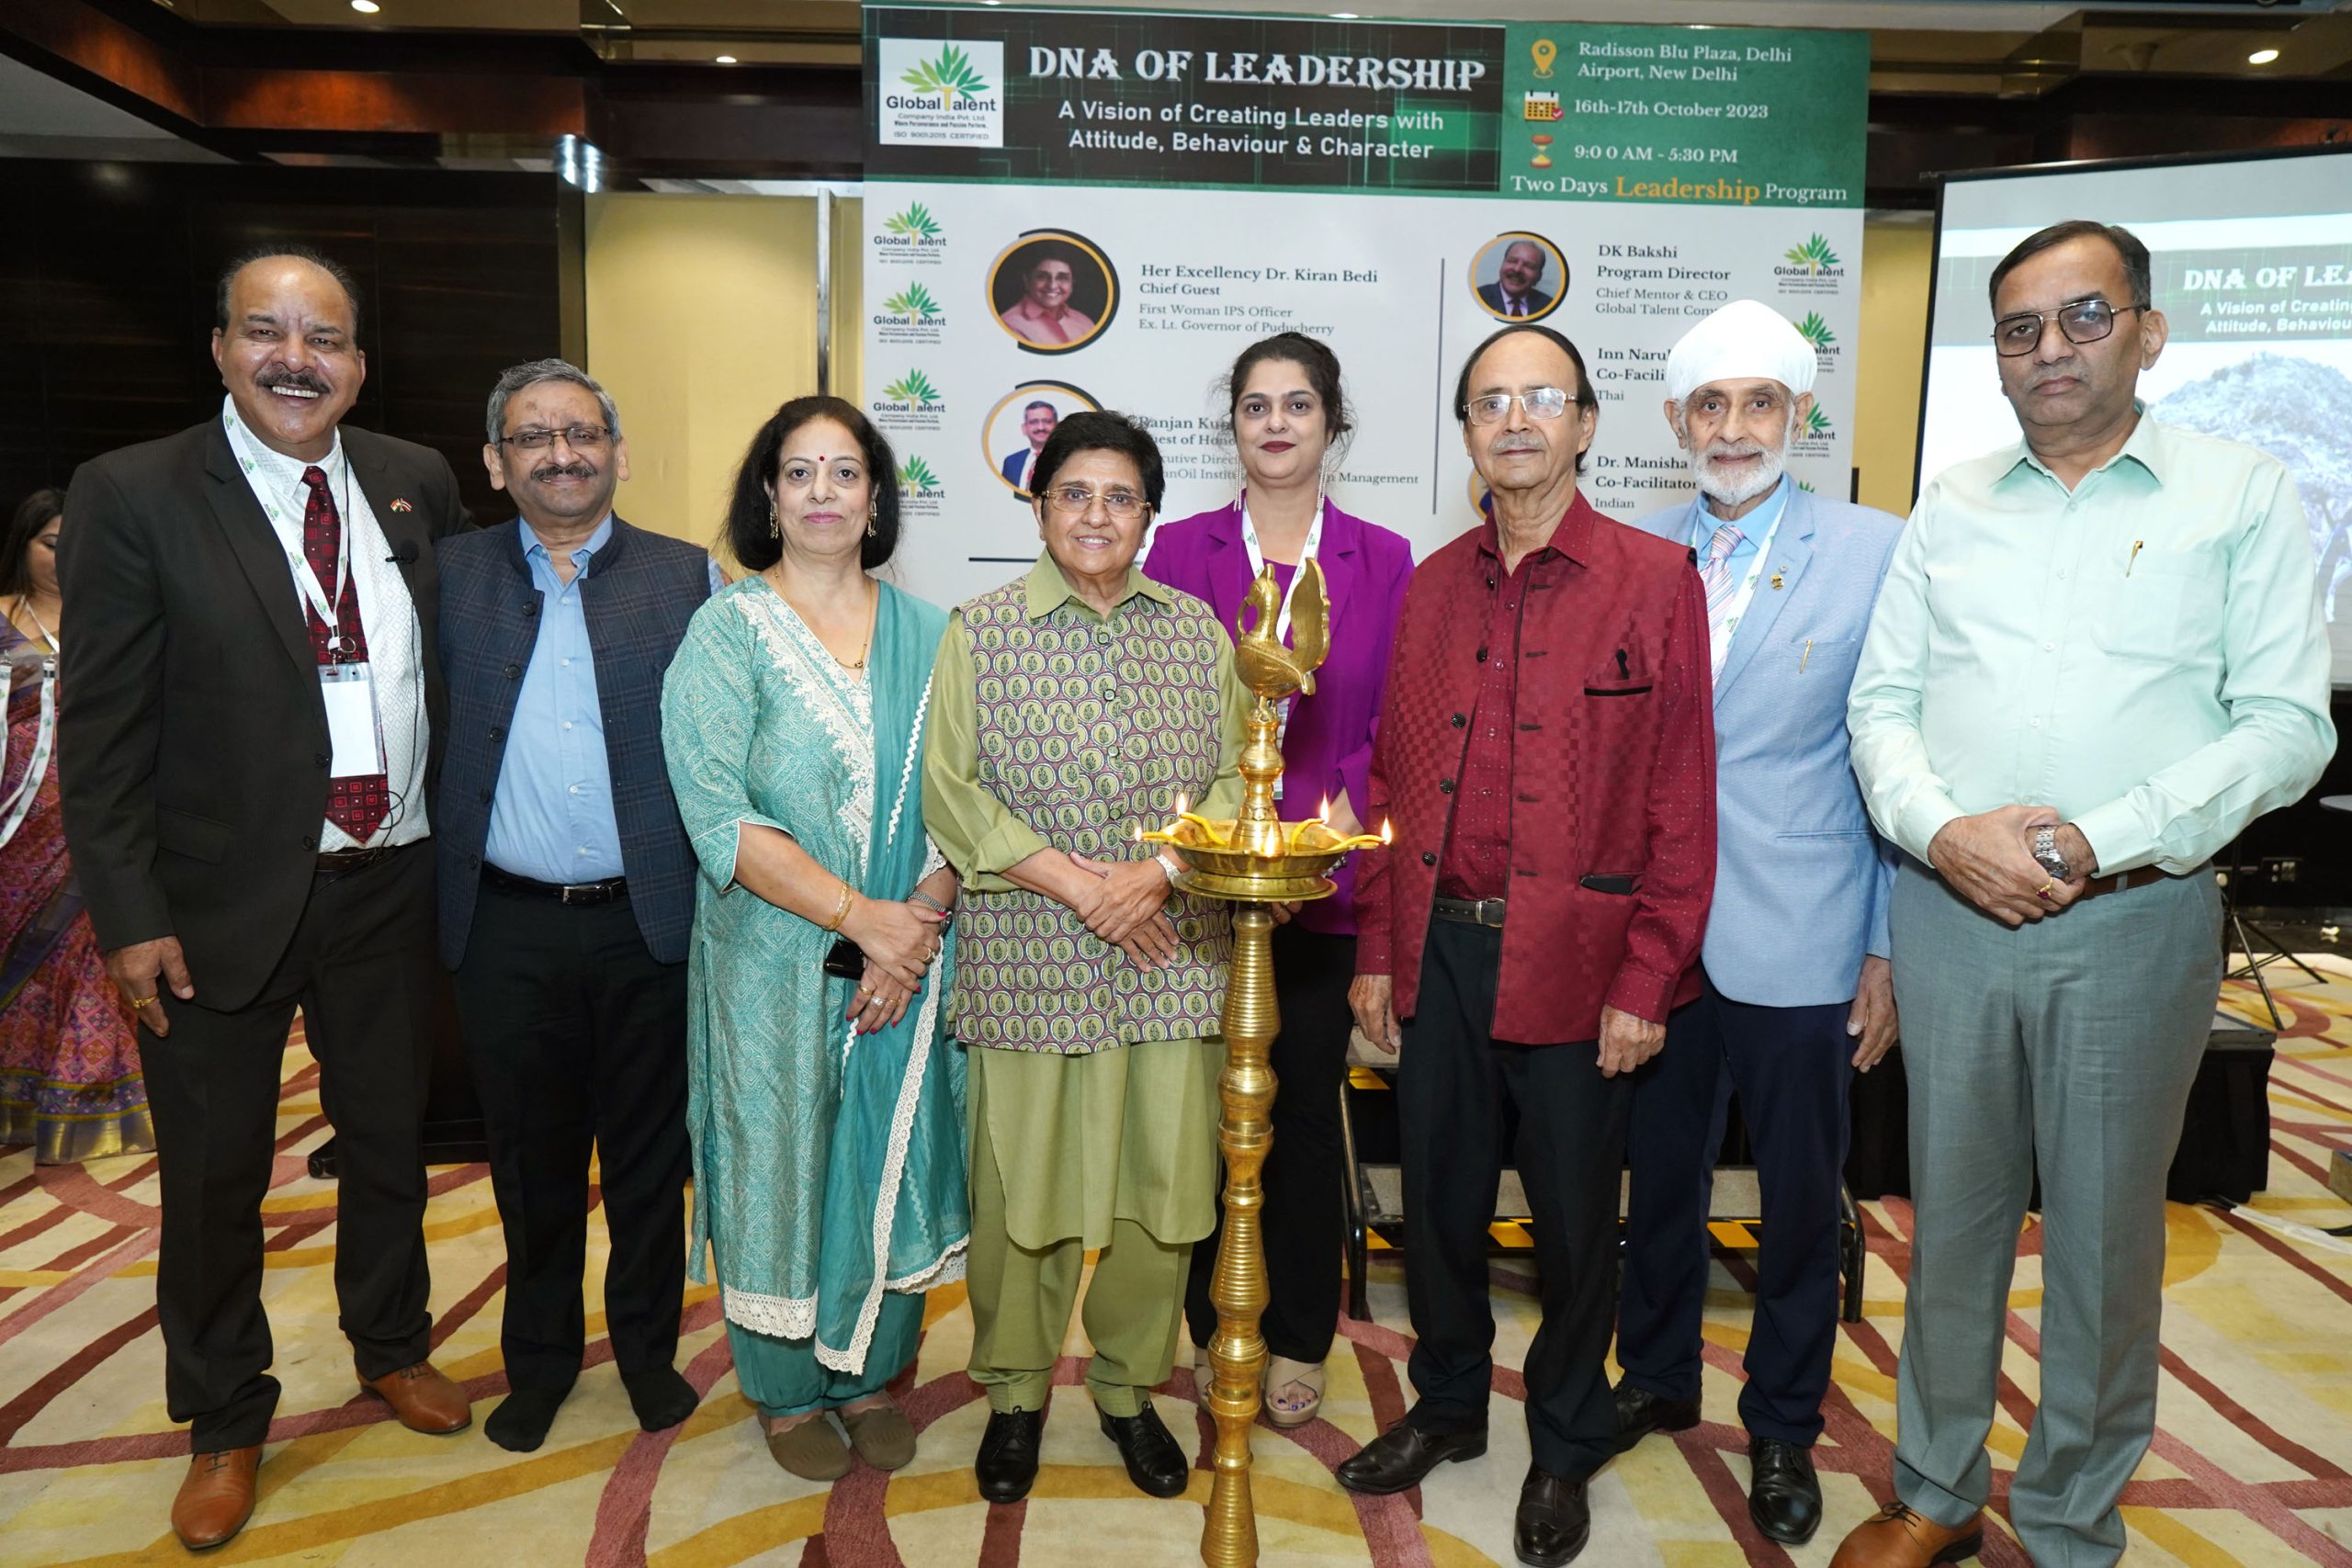 DNA of Leadership program held in Delhi